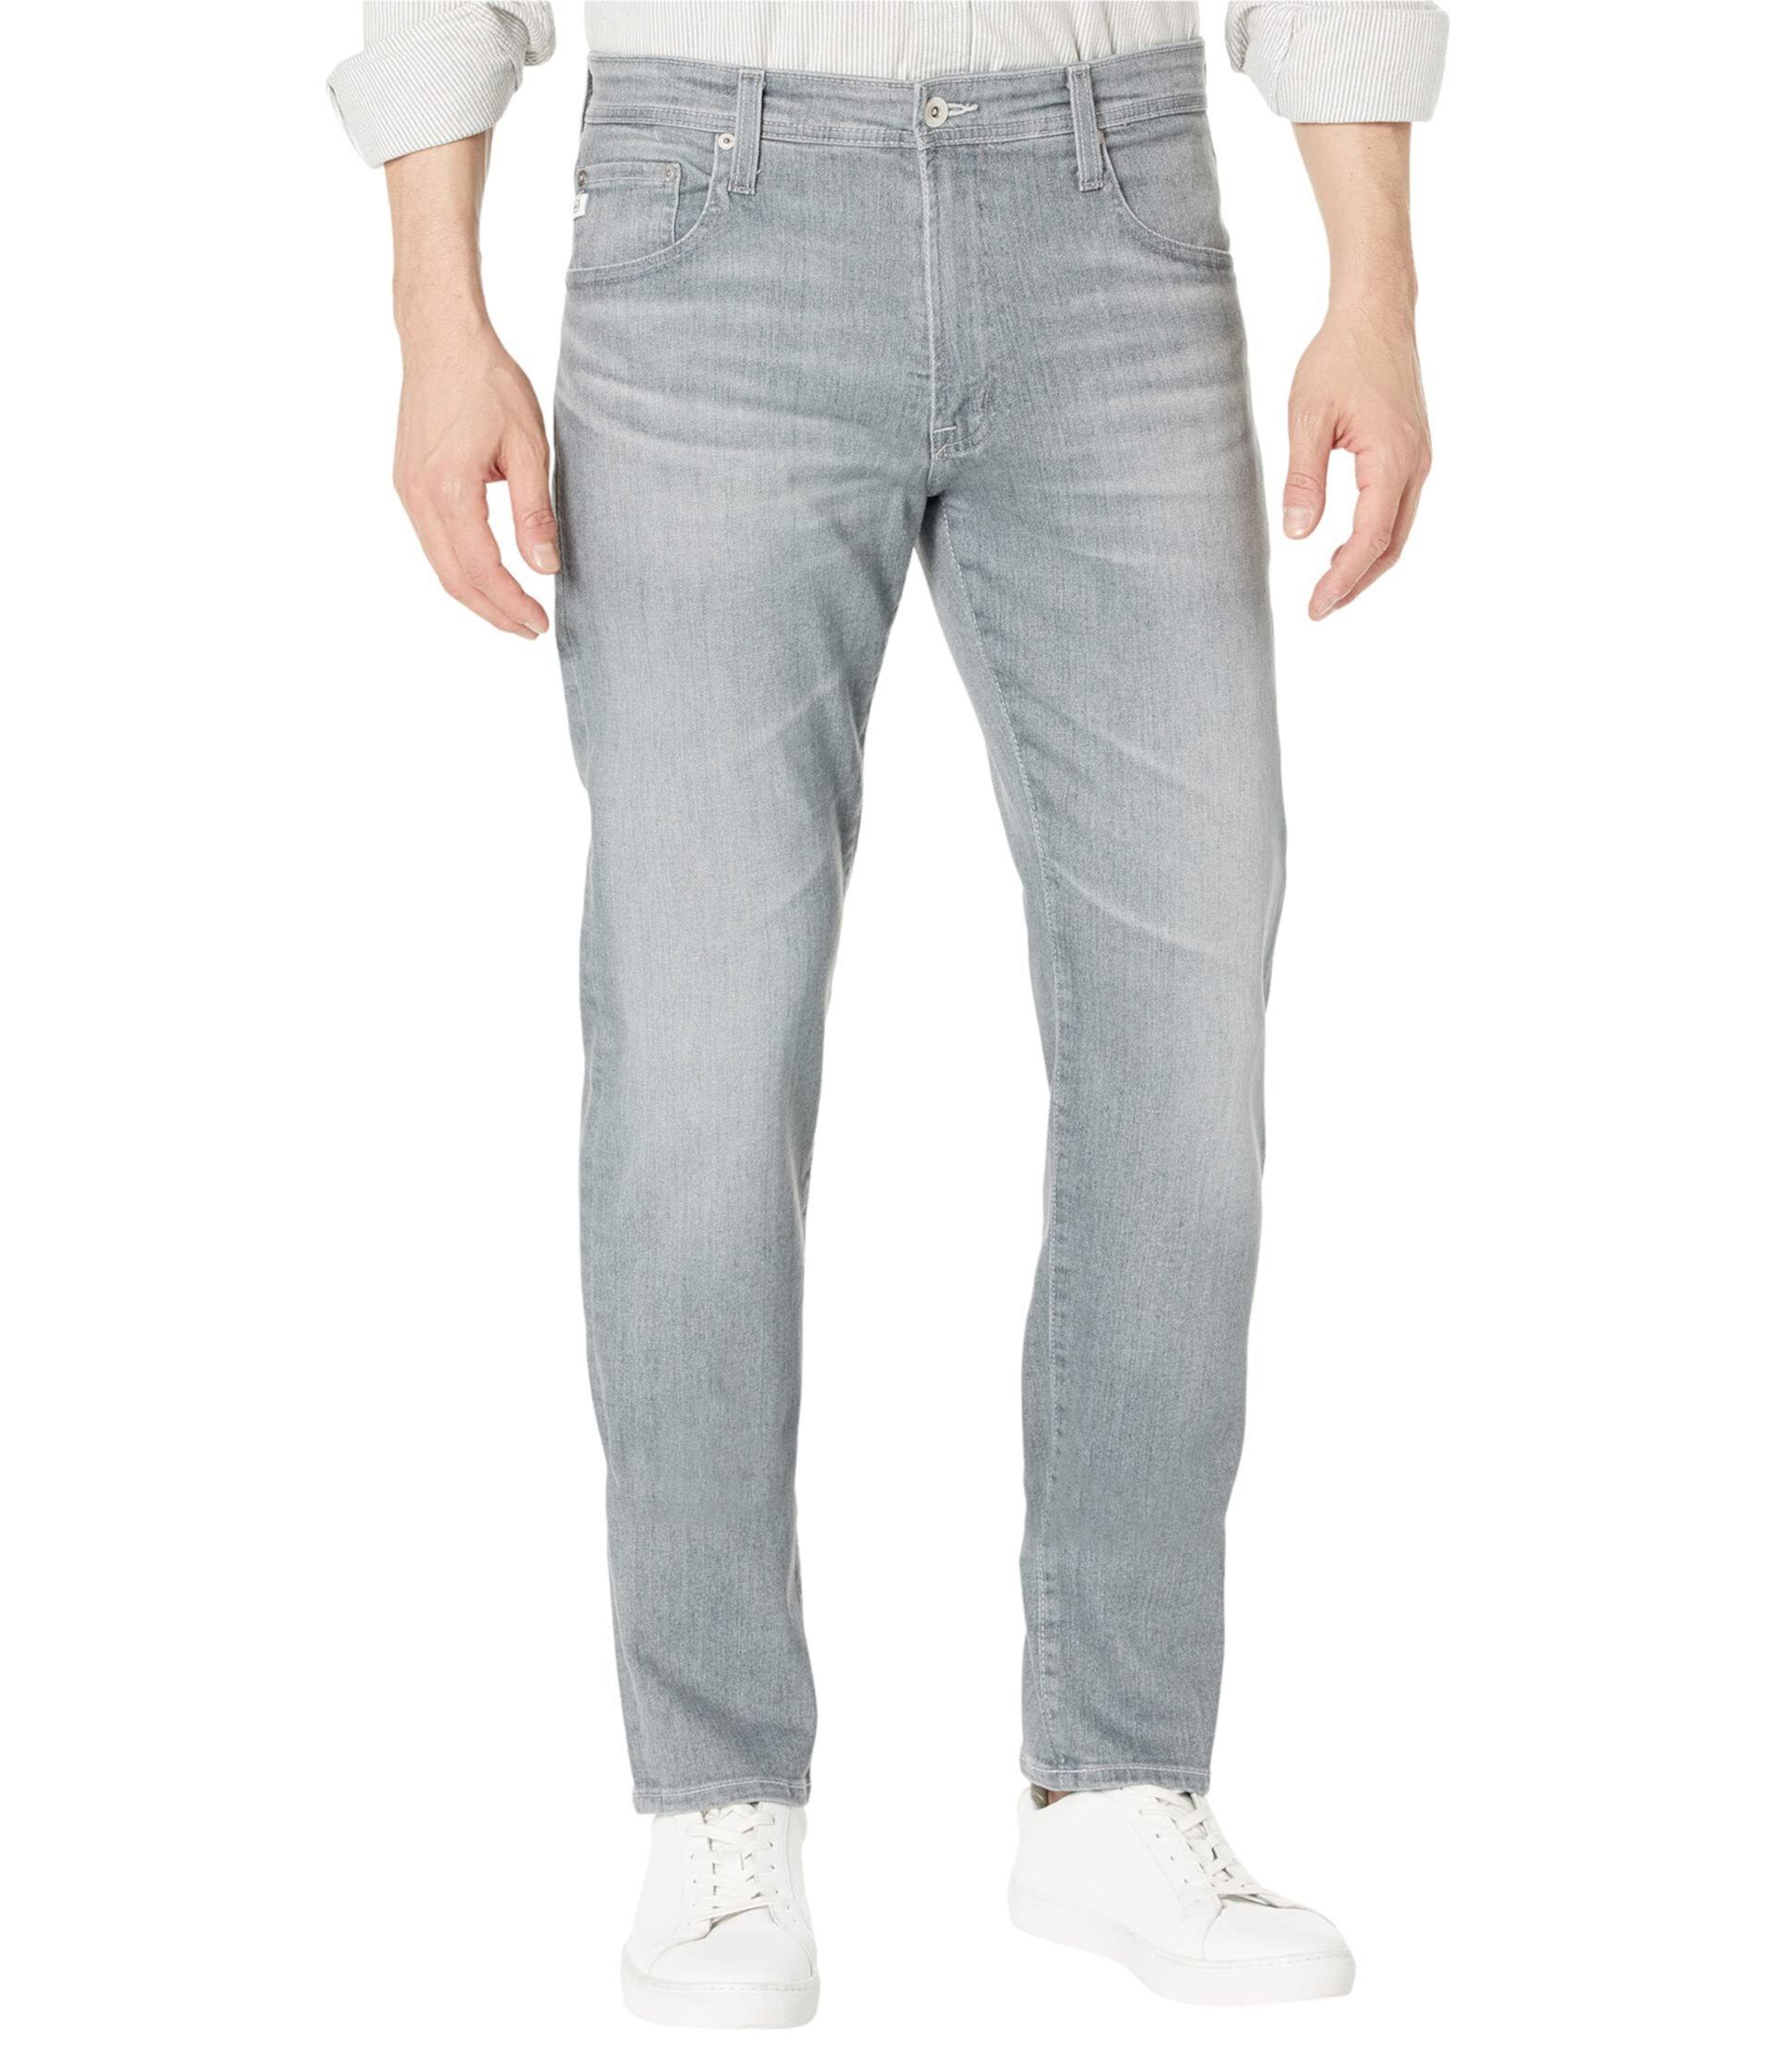 Джинсы Tellis Modern Slim в цвете Huerta AG Jeans